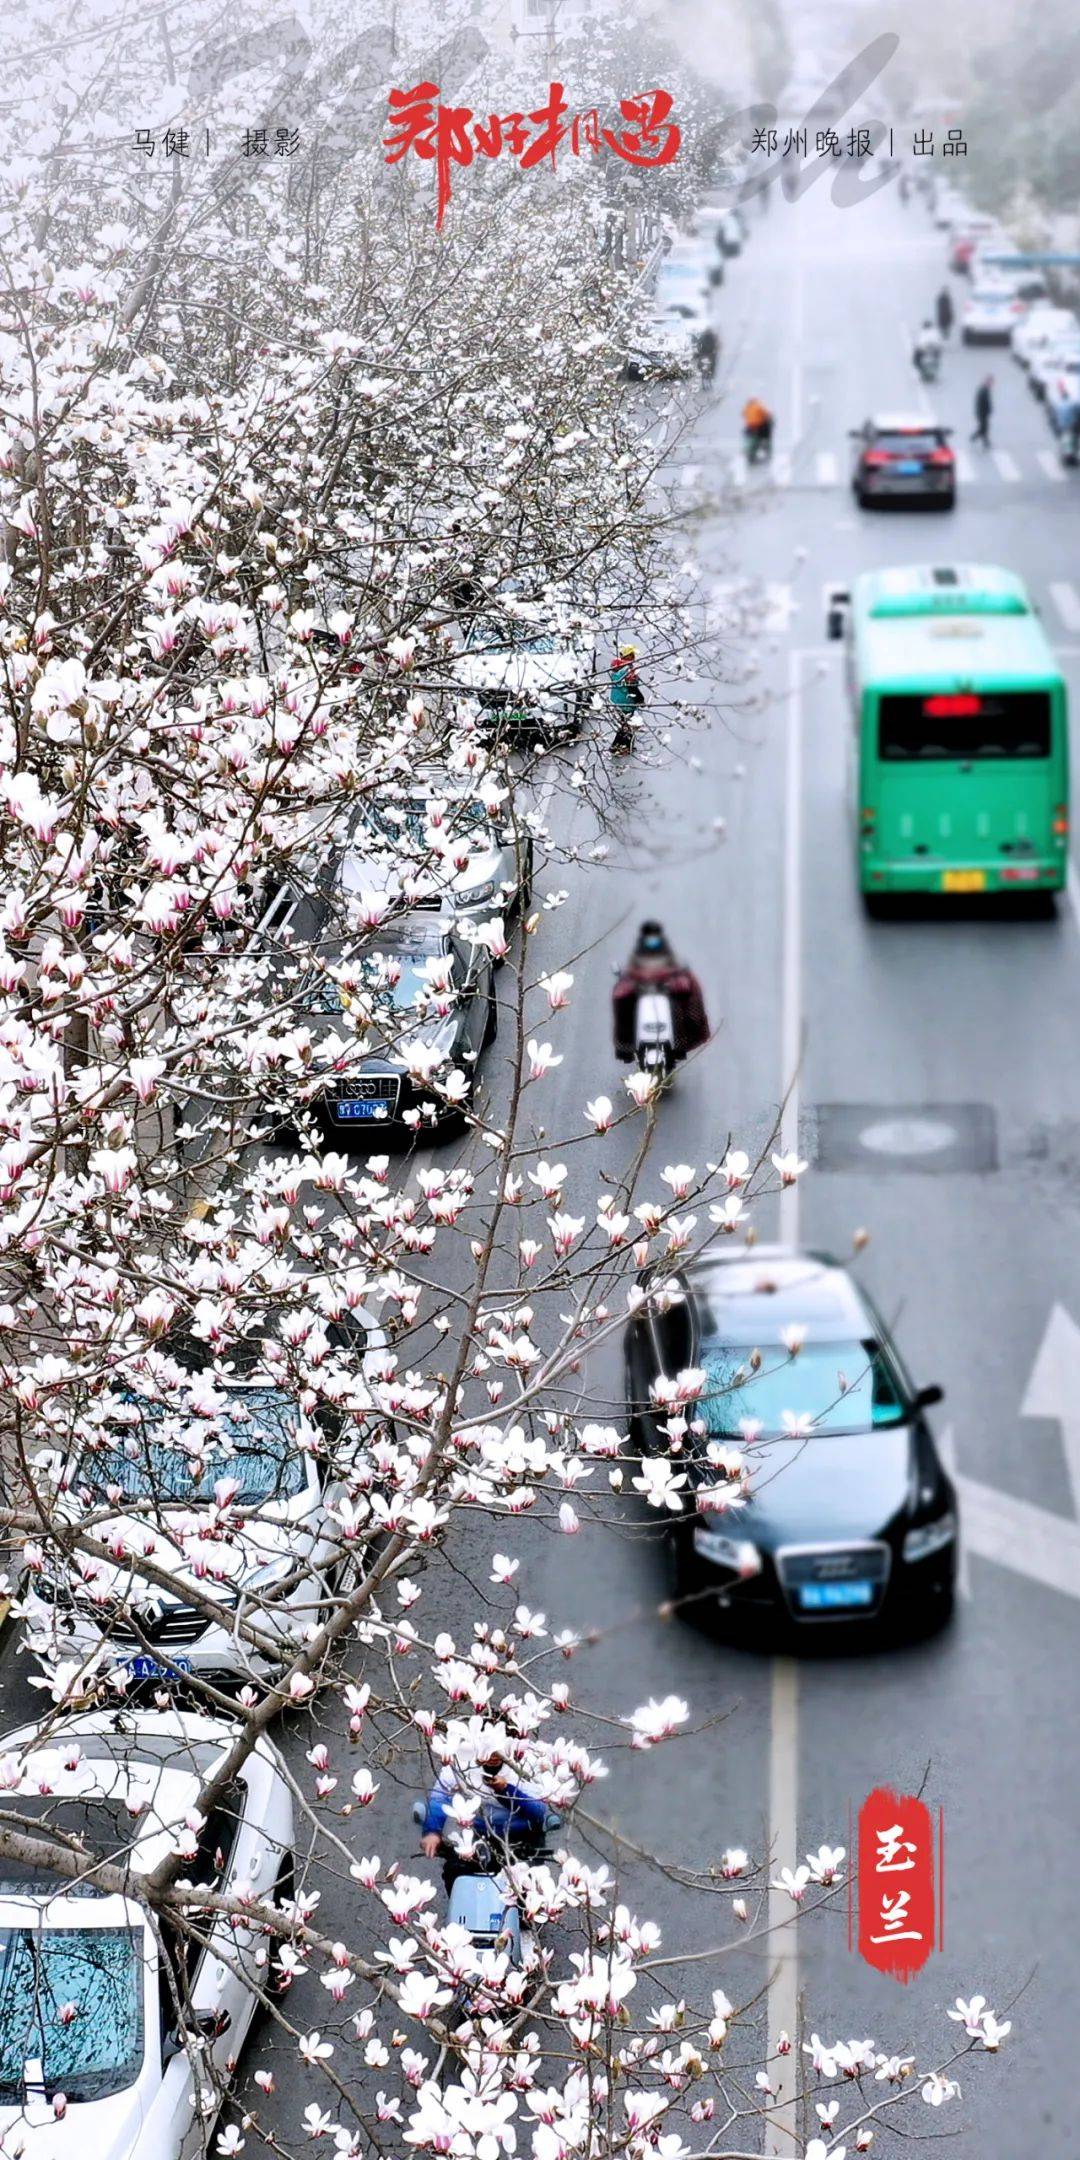 花瓣|郑好相遇 | 在郑州最早迎来春天的街道碰个面吧